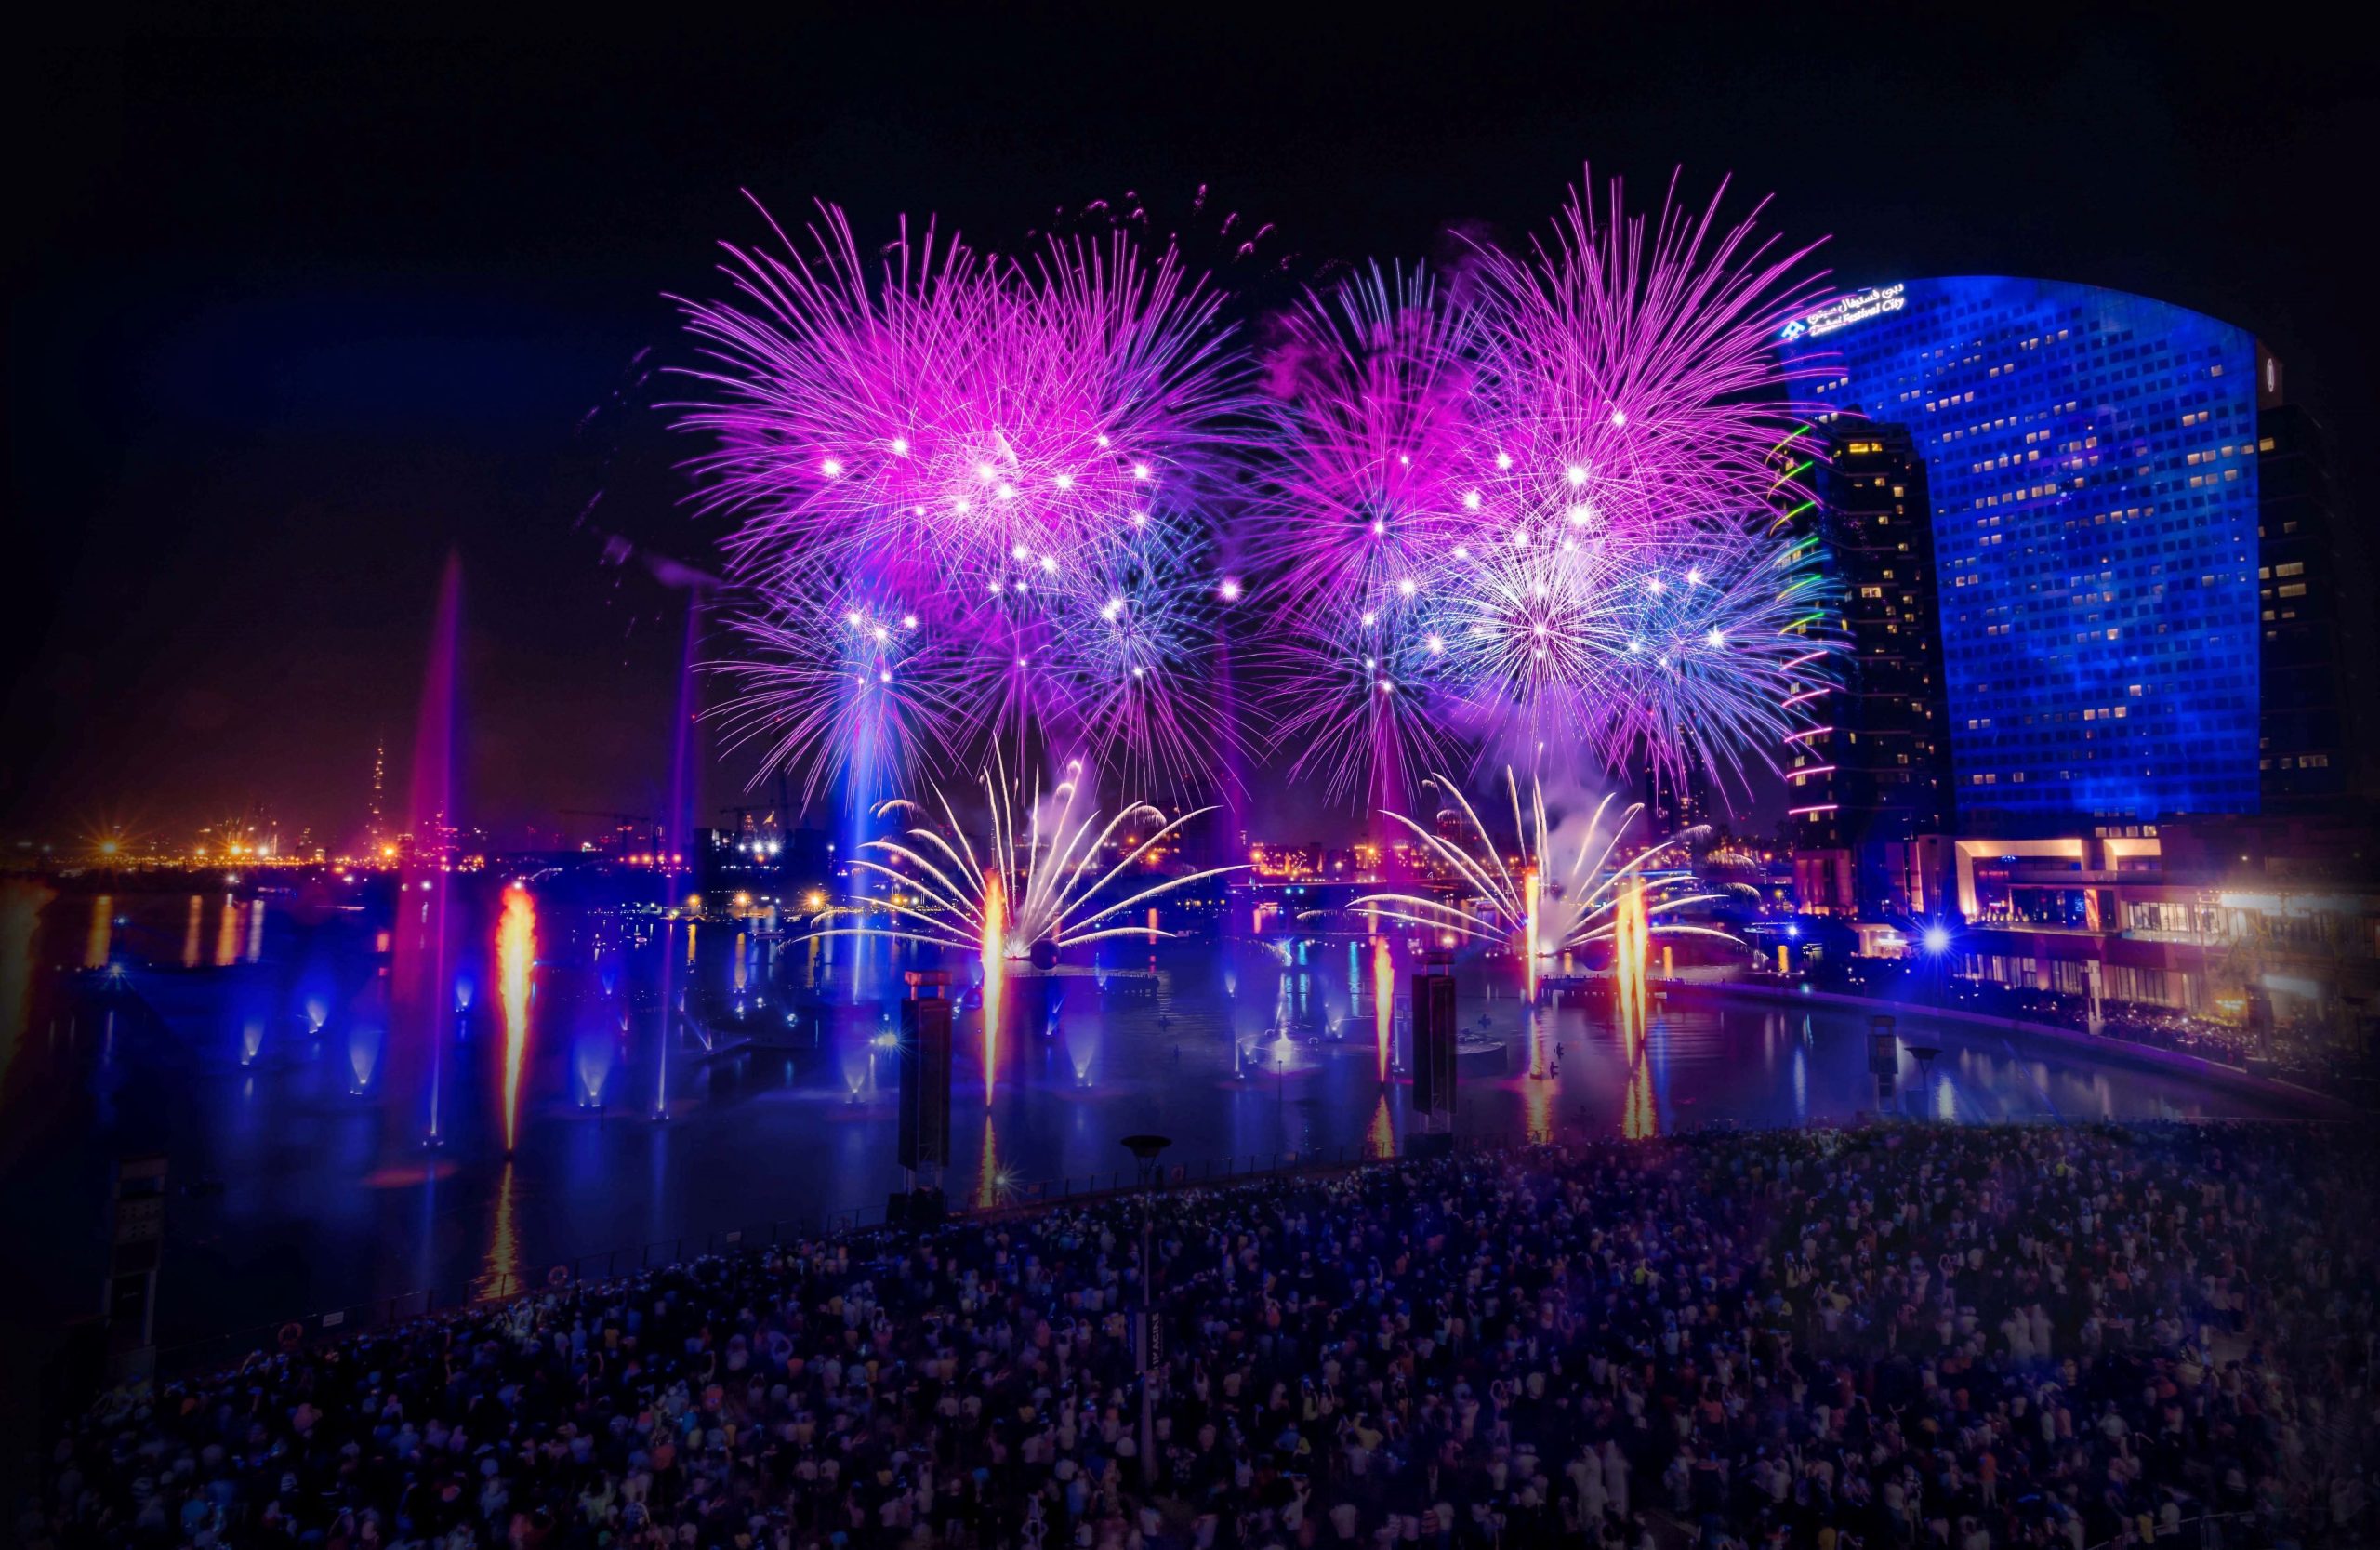 دبي فستيفال سيتي مول يطلق عرض مميز للألعاب النارية خلال عيد الأضحى 2023